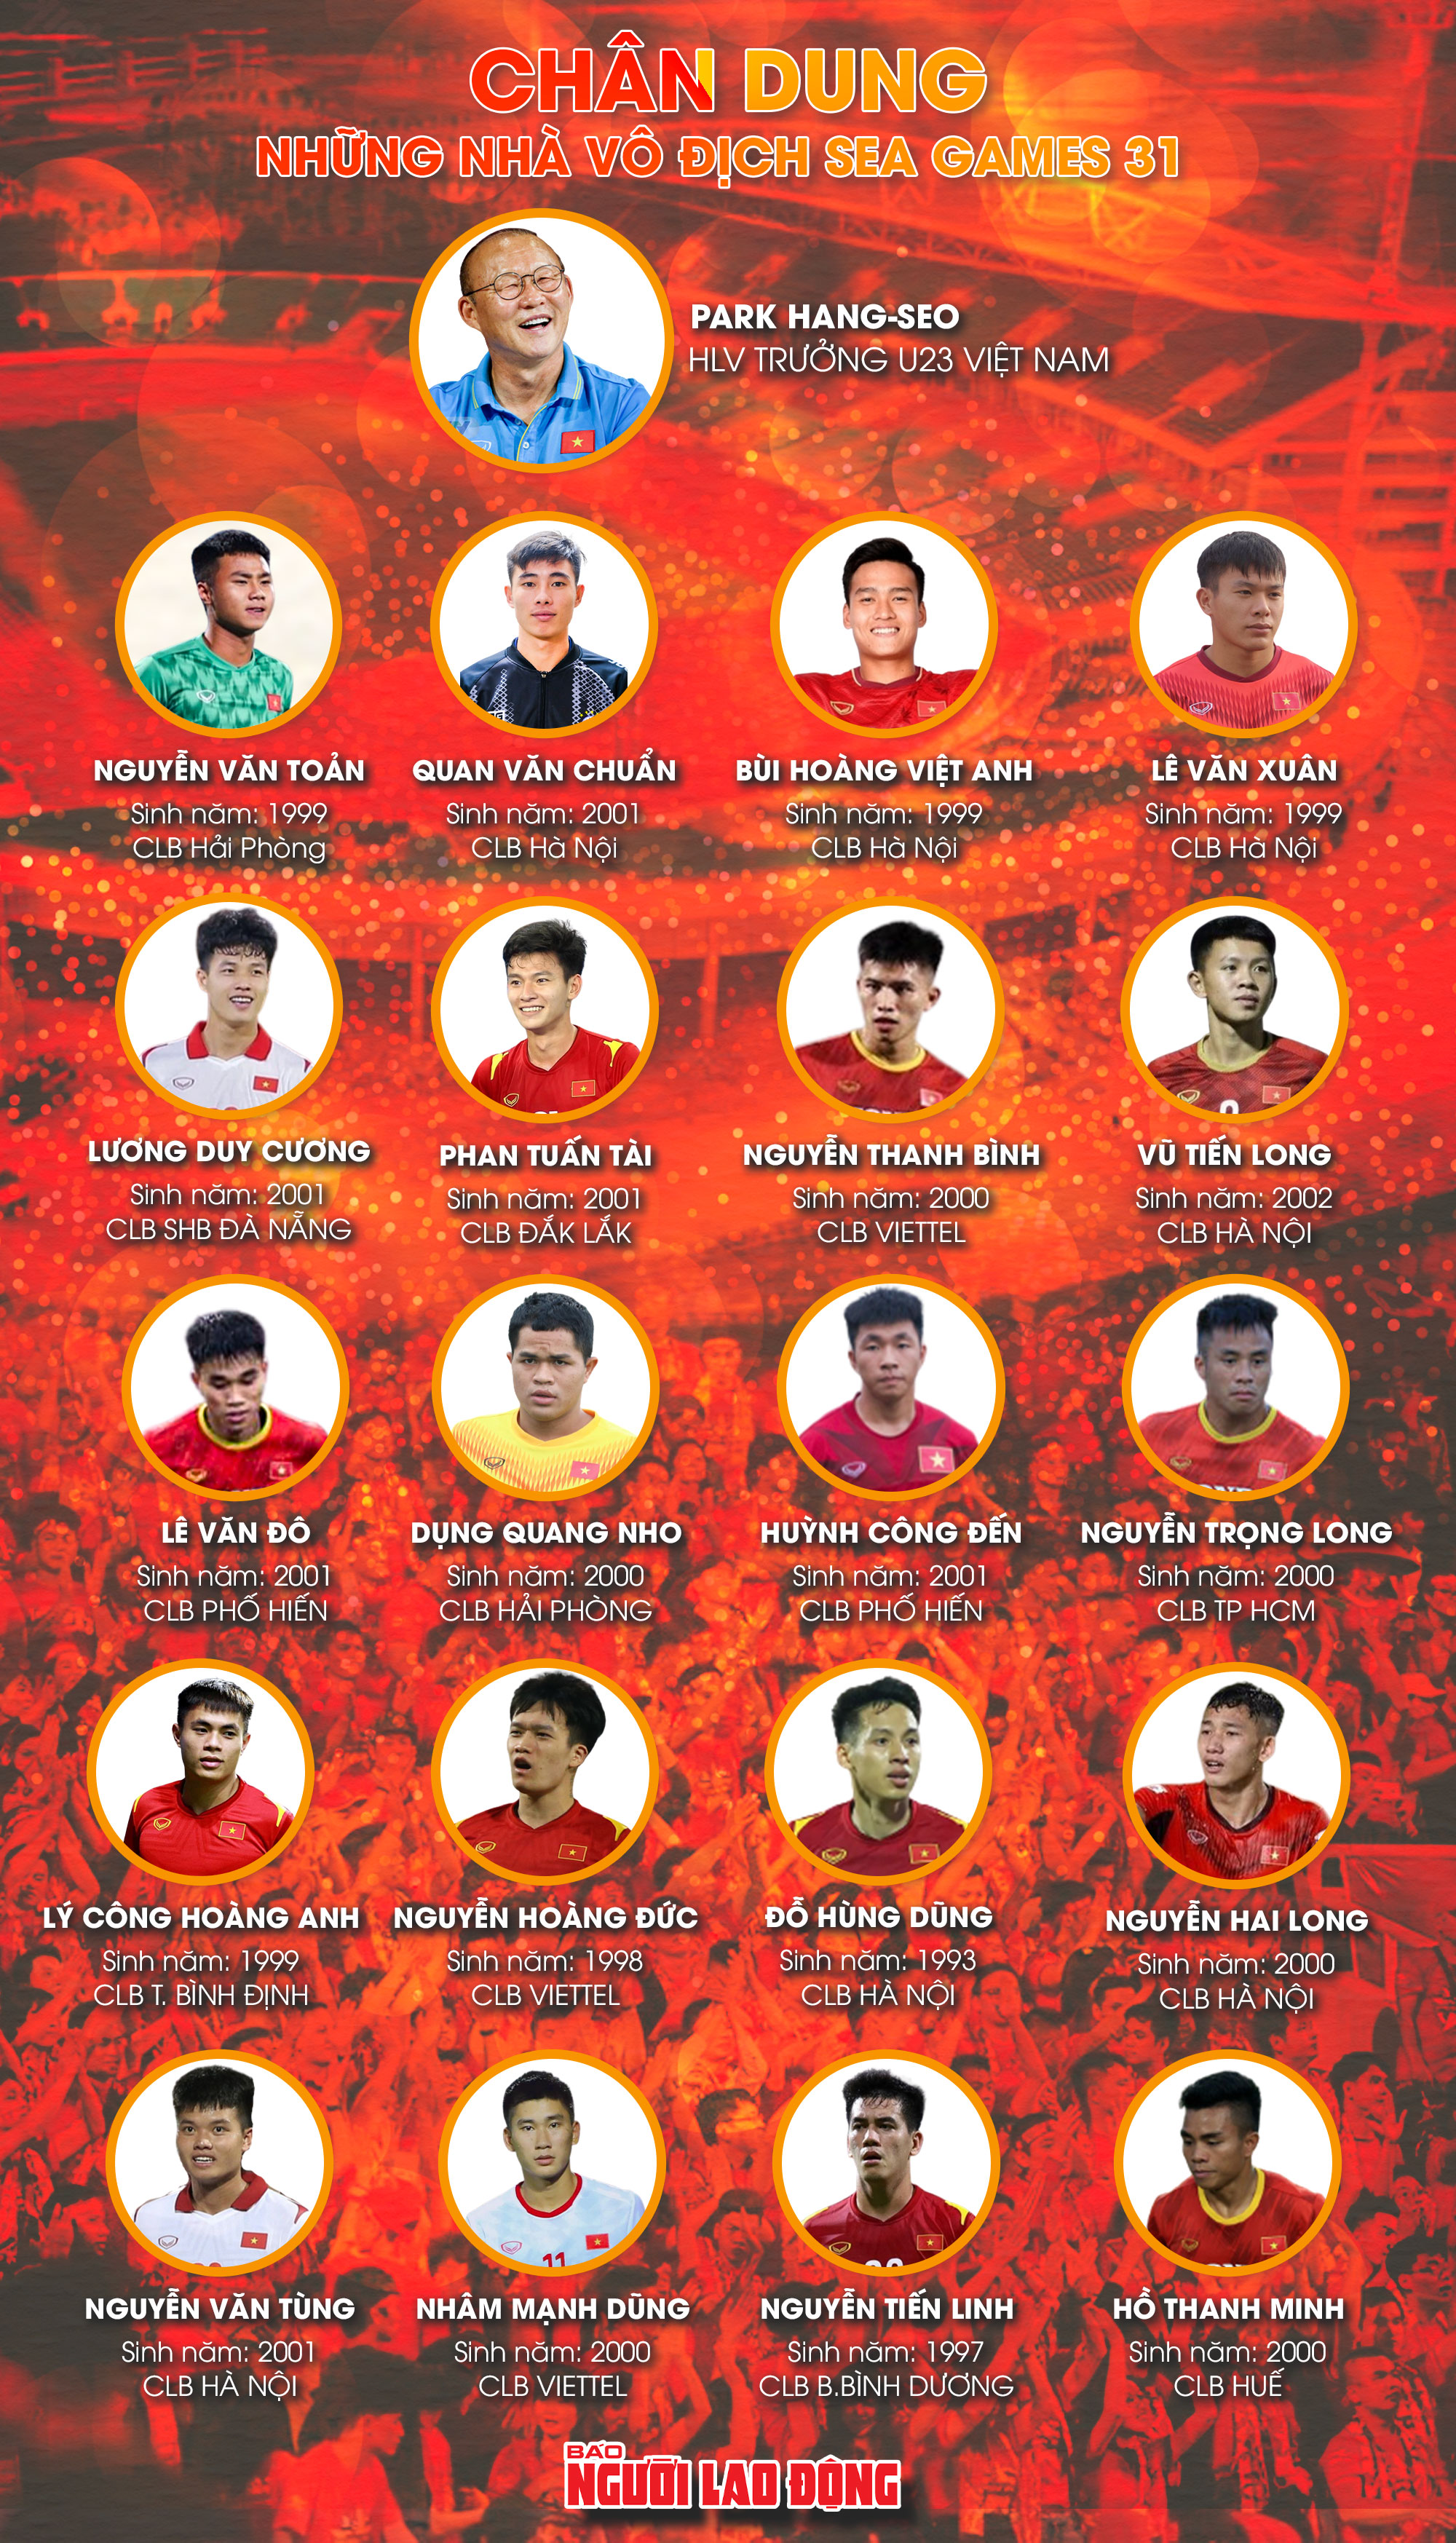 Nước Việt Nam luôn được biết đến với bóng đá đỉnh cao. Danh hiệu nhà vô địch SEA Games của các VĐV Việt Nam chưa bao giờ là điều ngạc nhiên, với sự nỗ lực và khát khao vươn tới đỉnh cao của các VĐV trẻ.